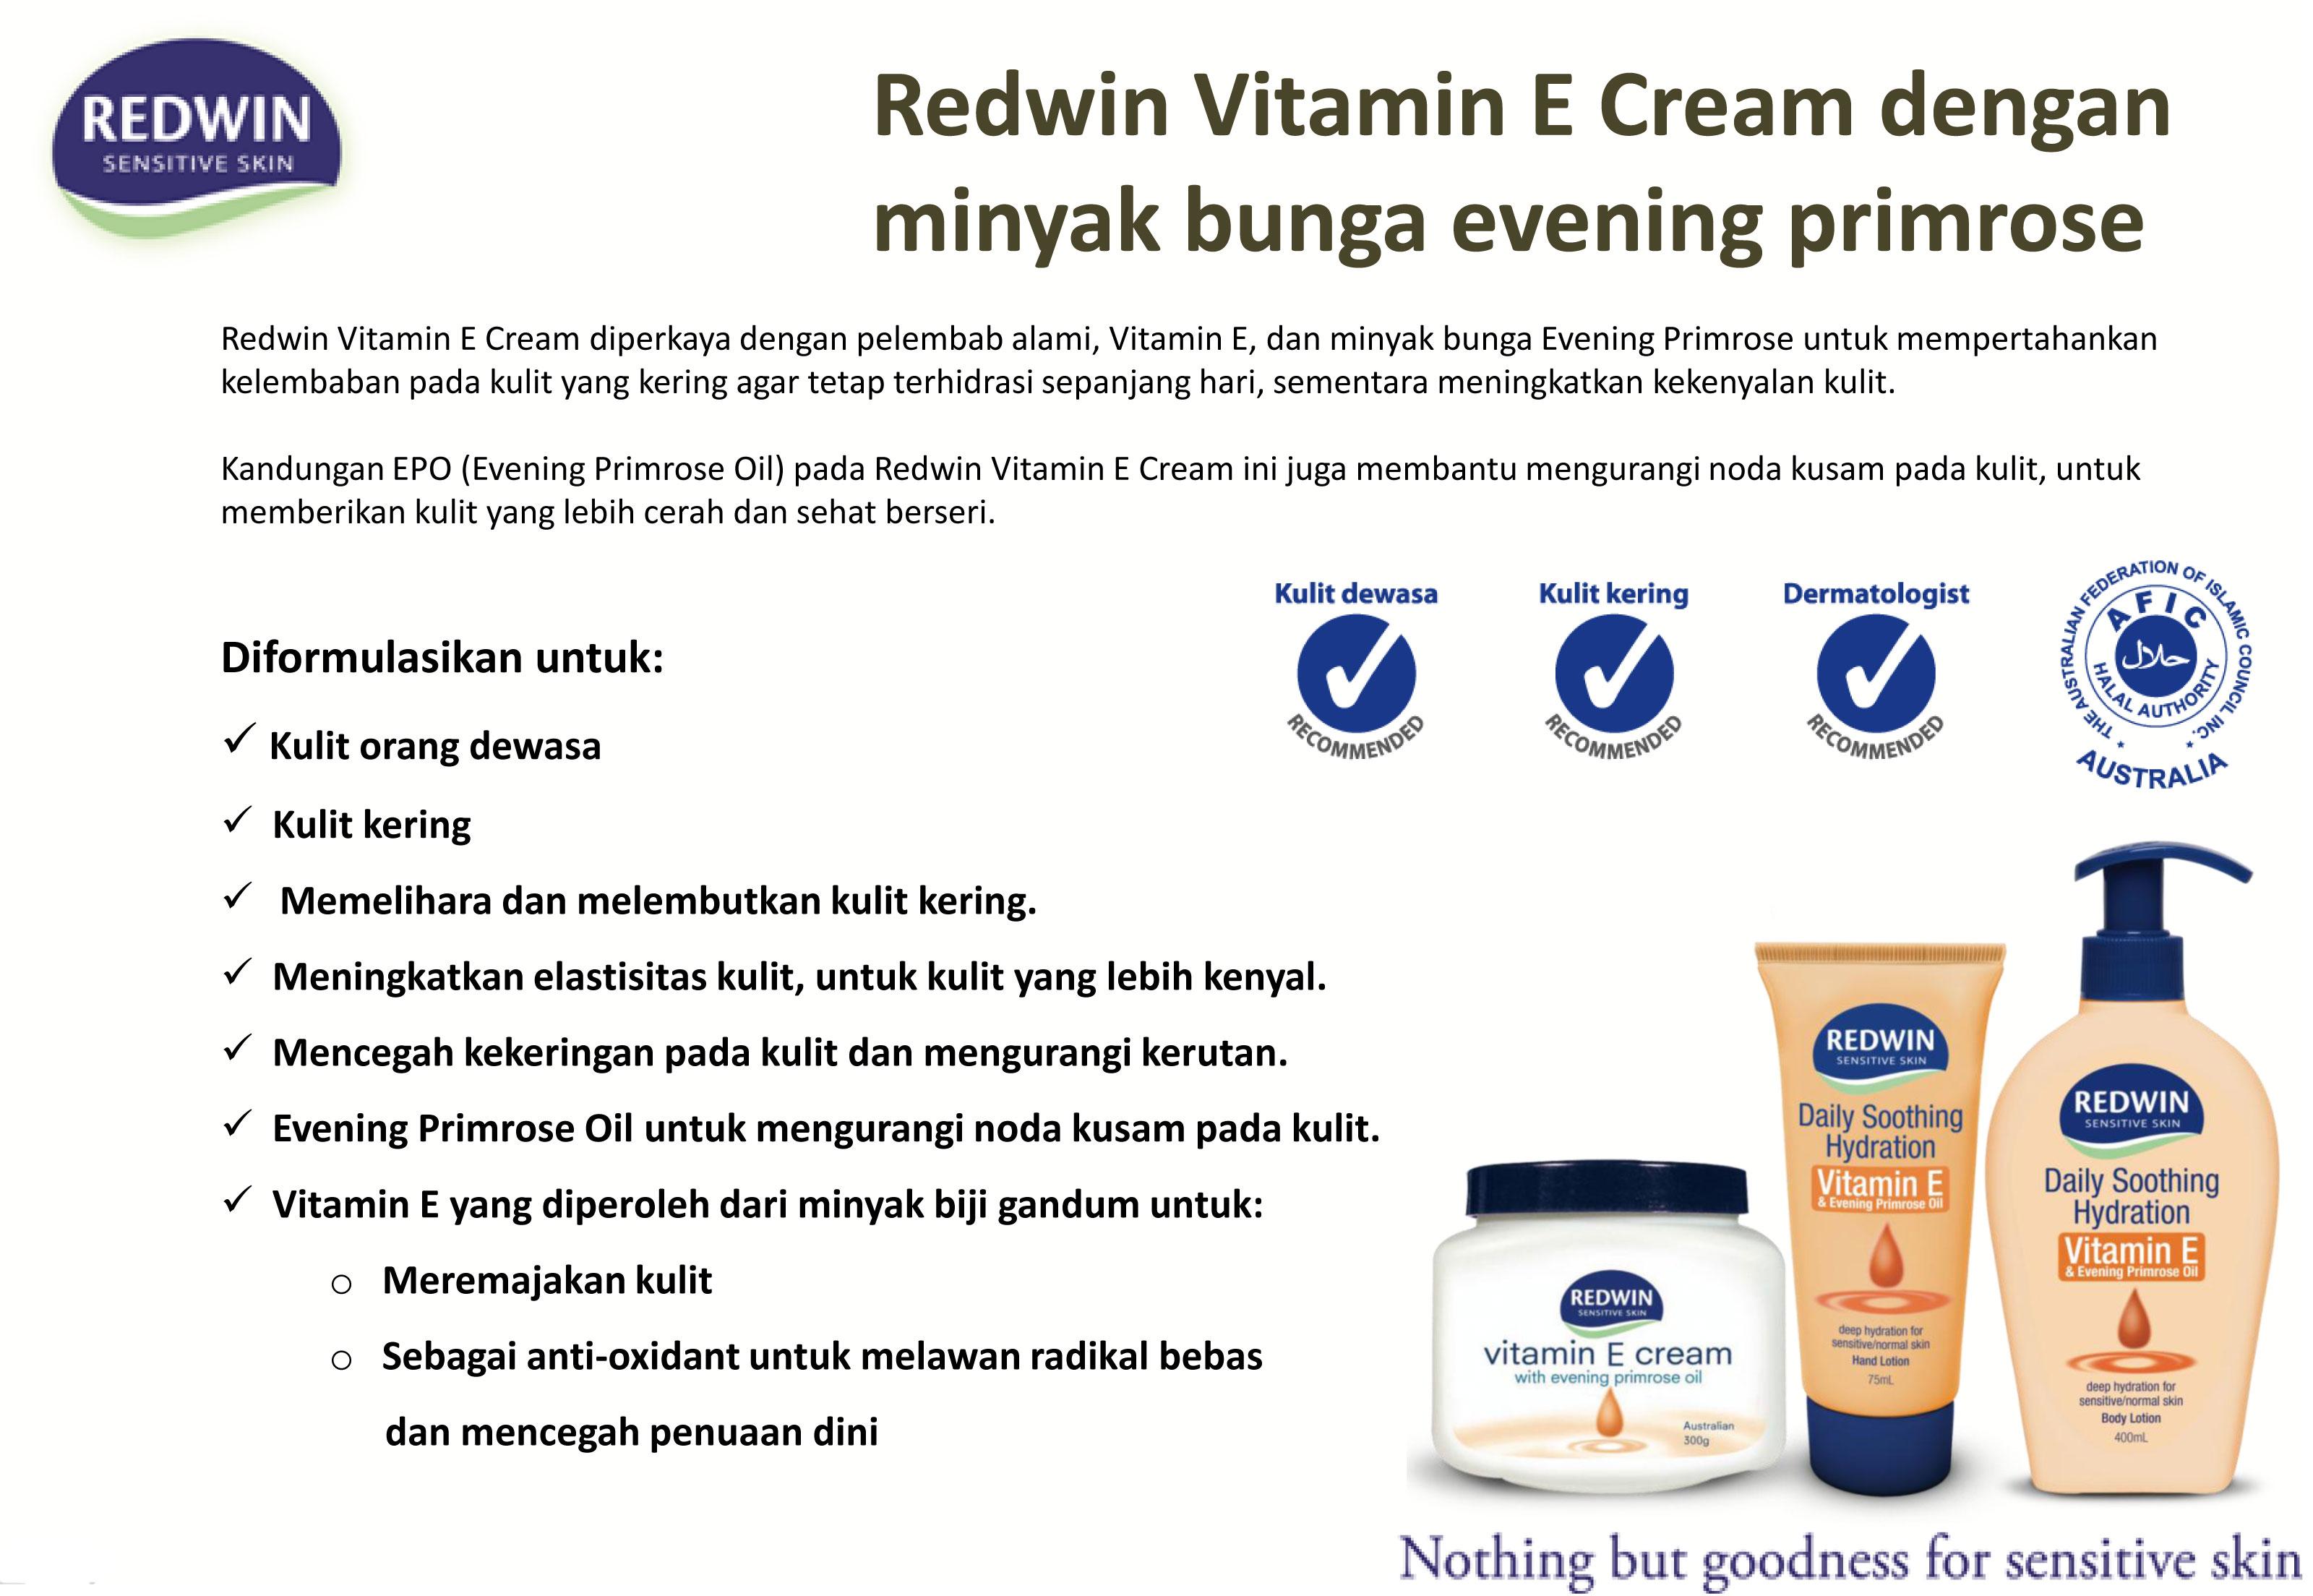 redwin vitamin e cream with evening primrose oil reviews